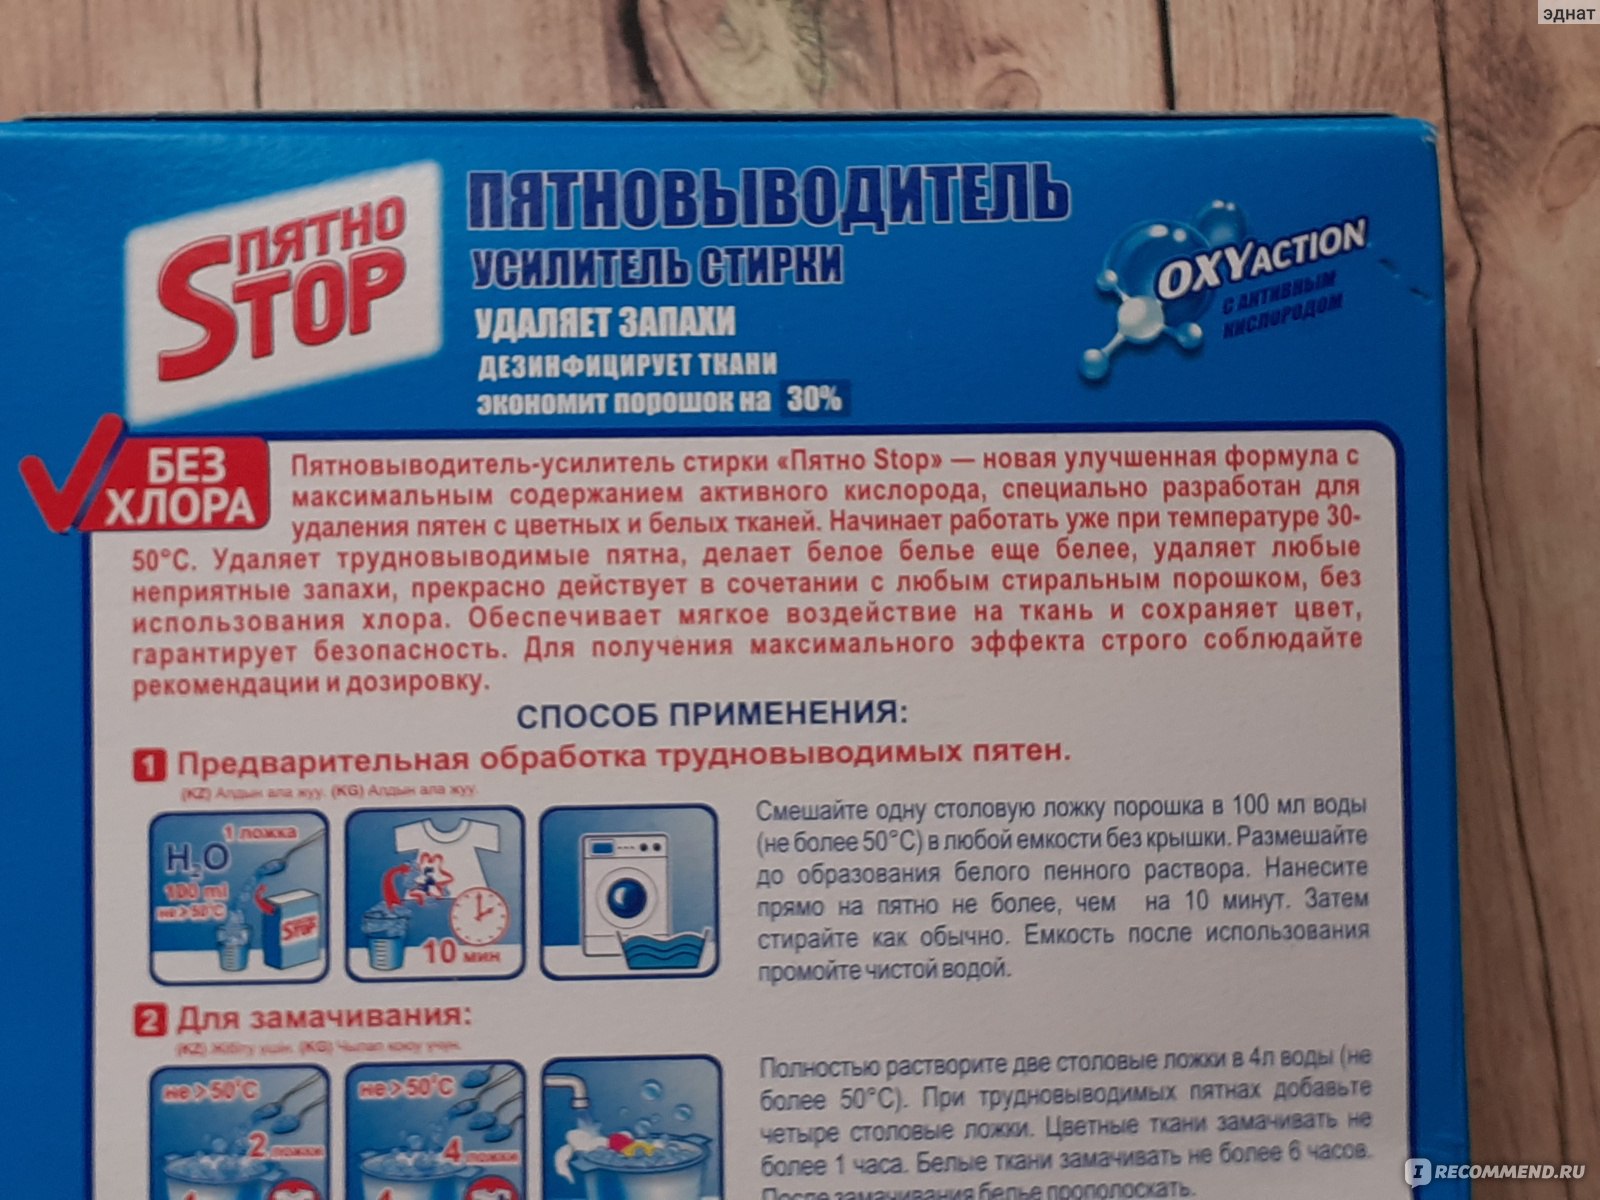 Пятновыводитель Новосибирский завод бытовой химии Усилитель стирки "ПятноStop" фото